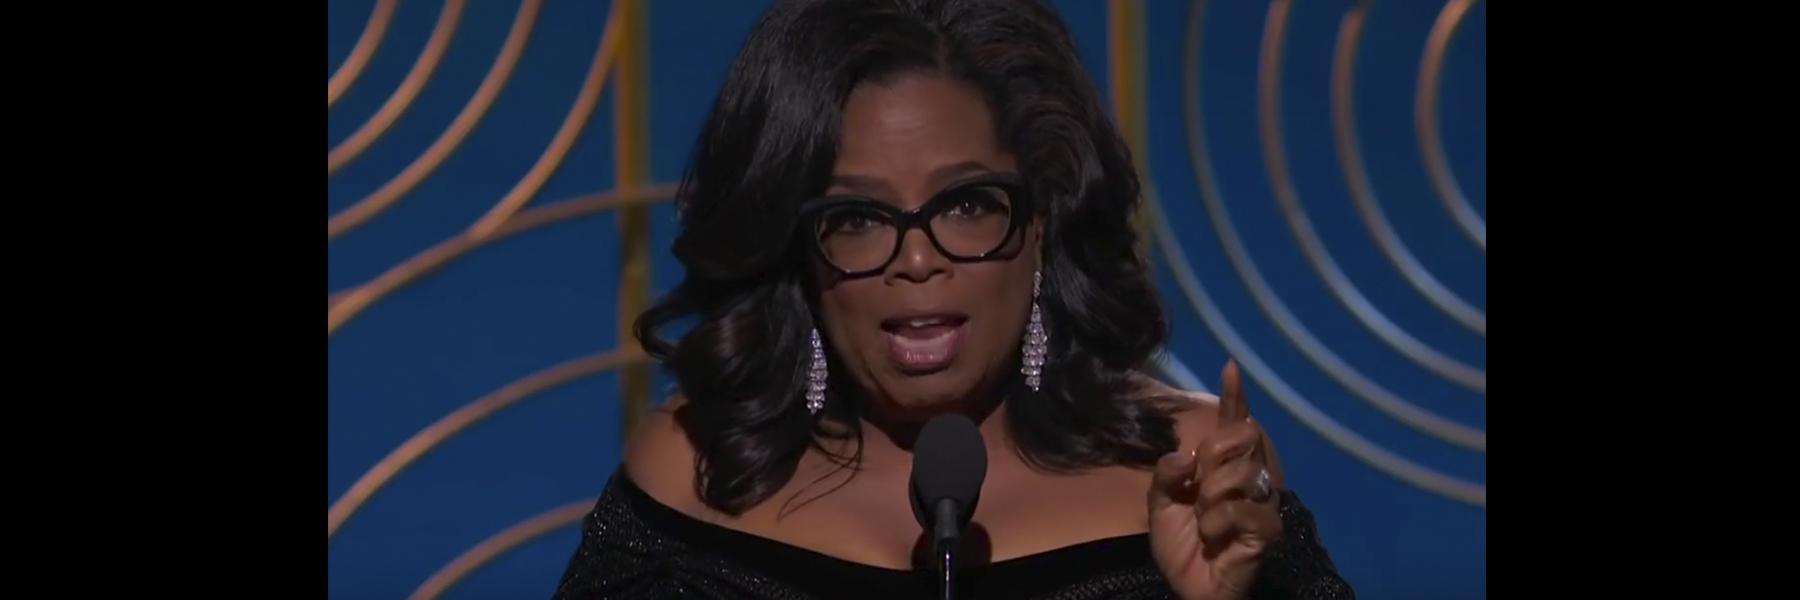 Que significa la referencia al suelo de linóleo en el discurso de Oprah  Winfrey?